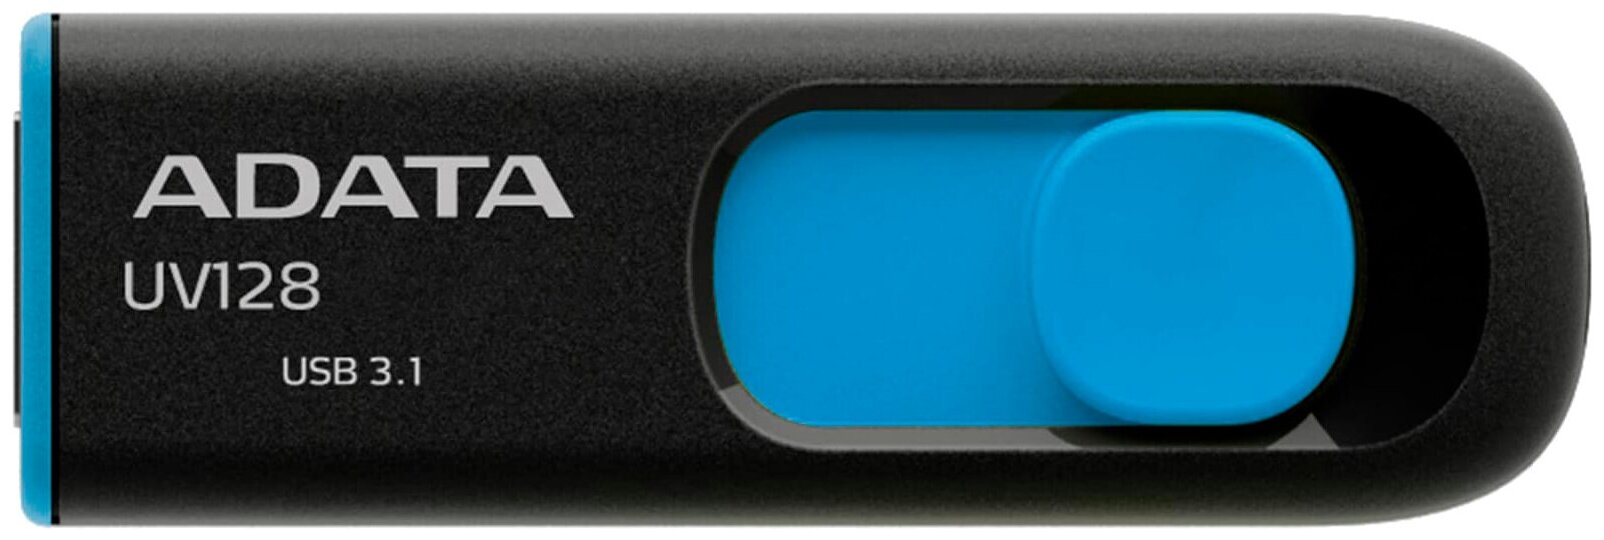 Флешка USB A-Data DashDrive UV128 64ГБ, USB3.0, черный и синий [auv128-64g-rbe]